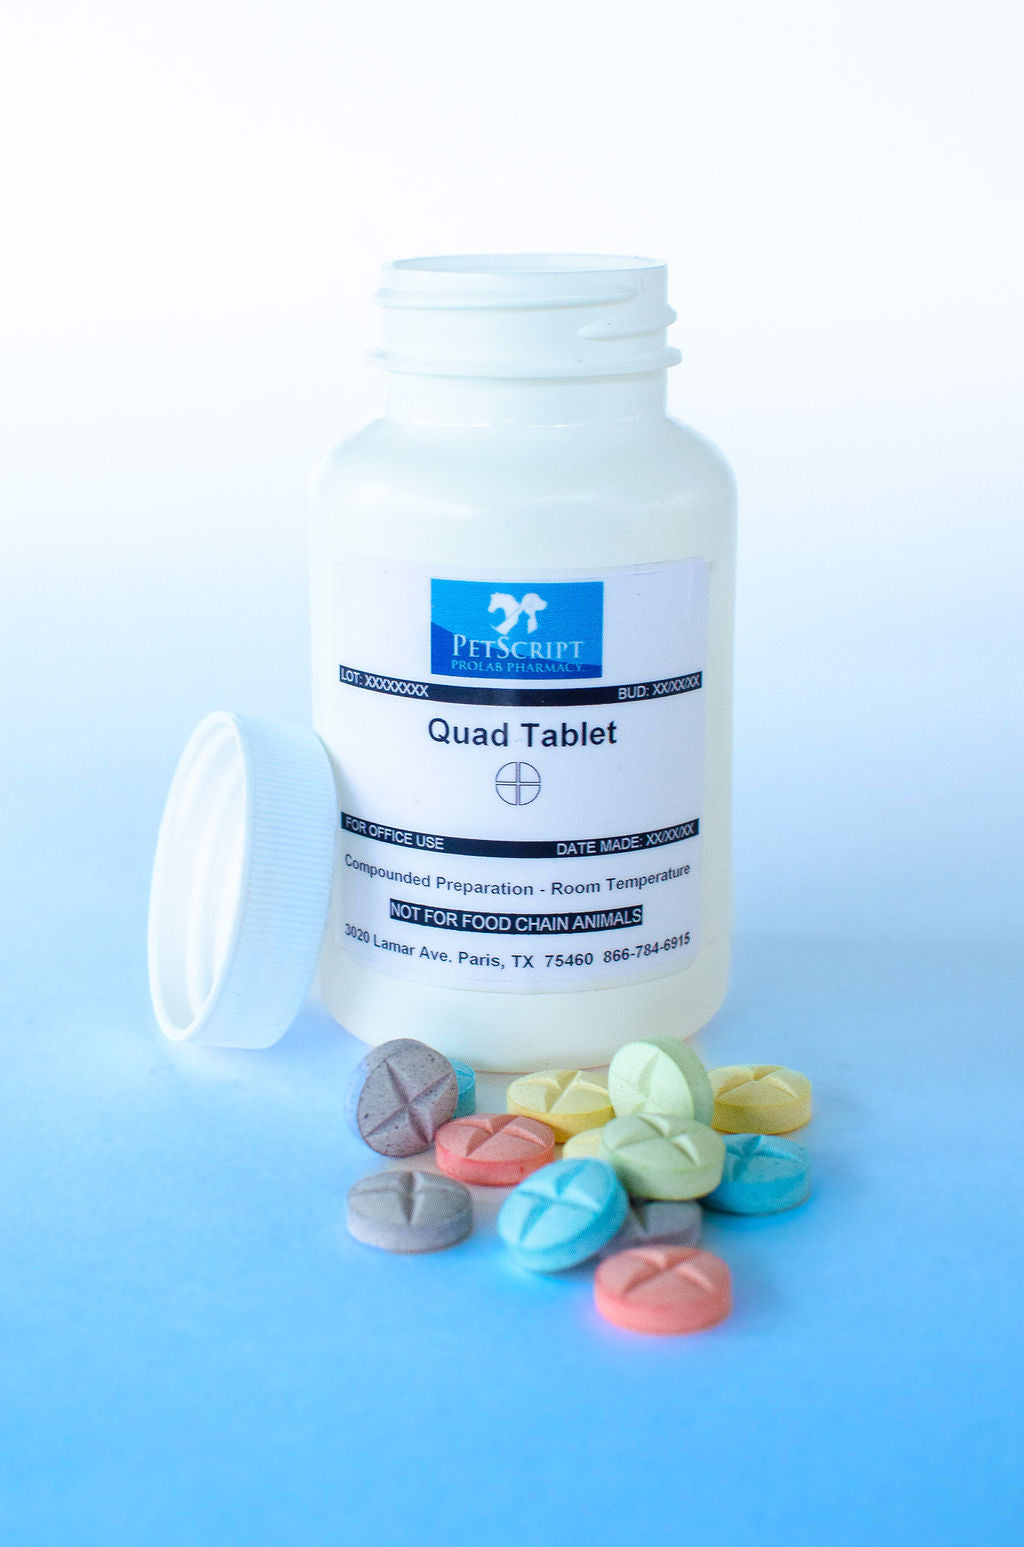 Fluconazole 68mg Quadrisect Tablet (Beef Flavor) - PetScript Pharmacy